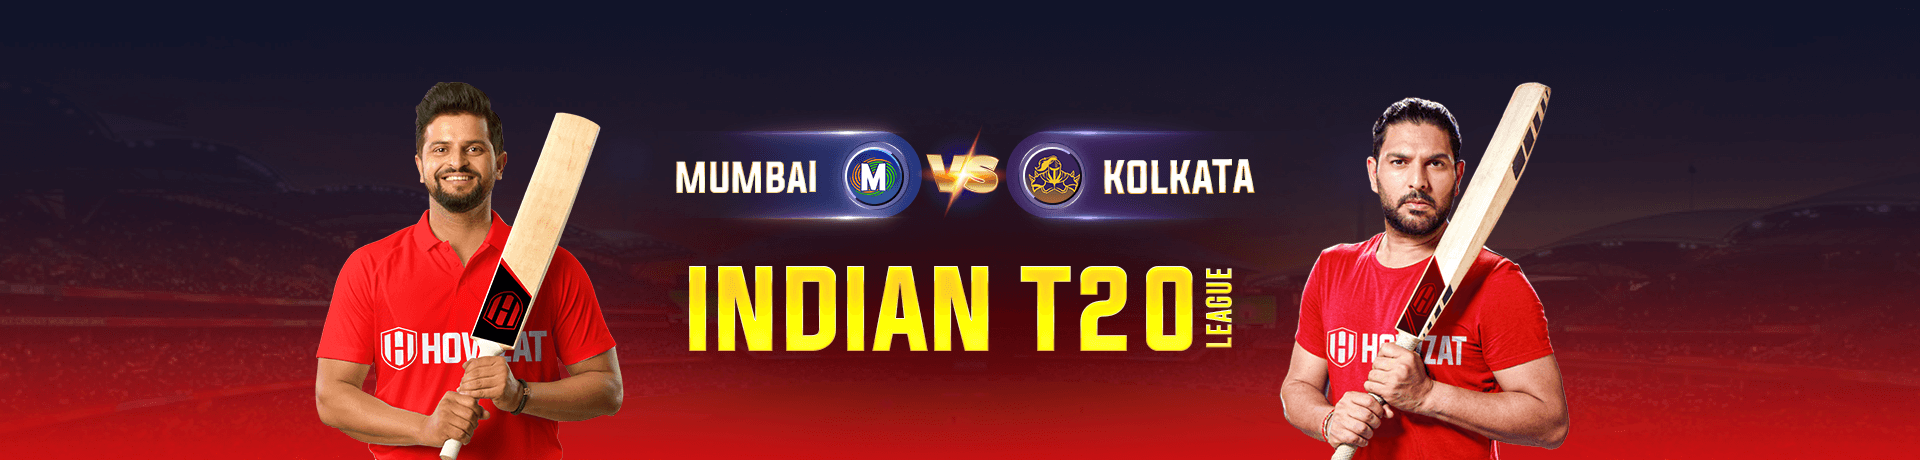 Mumbai vs Kolkata Indian T20 League